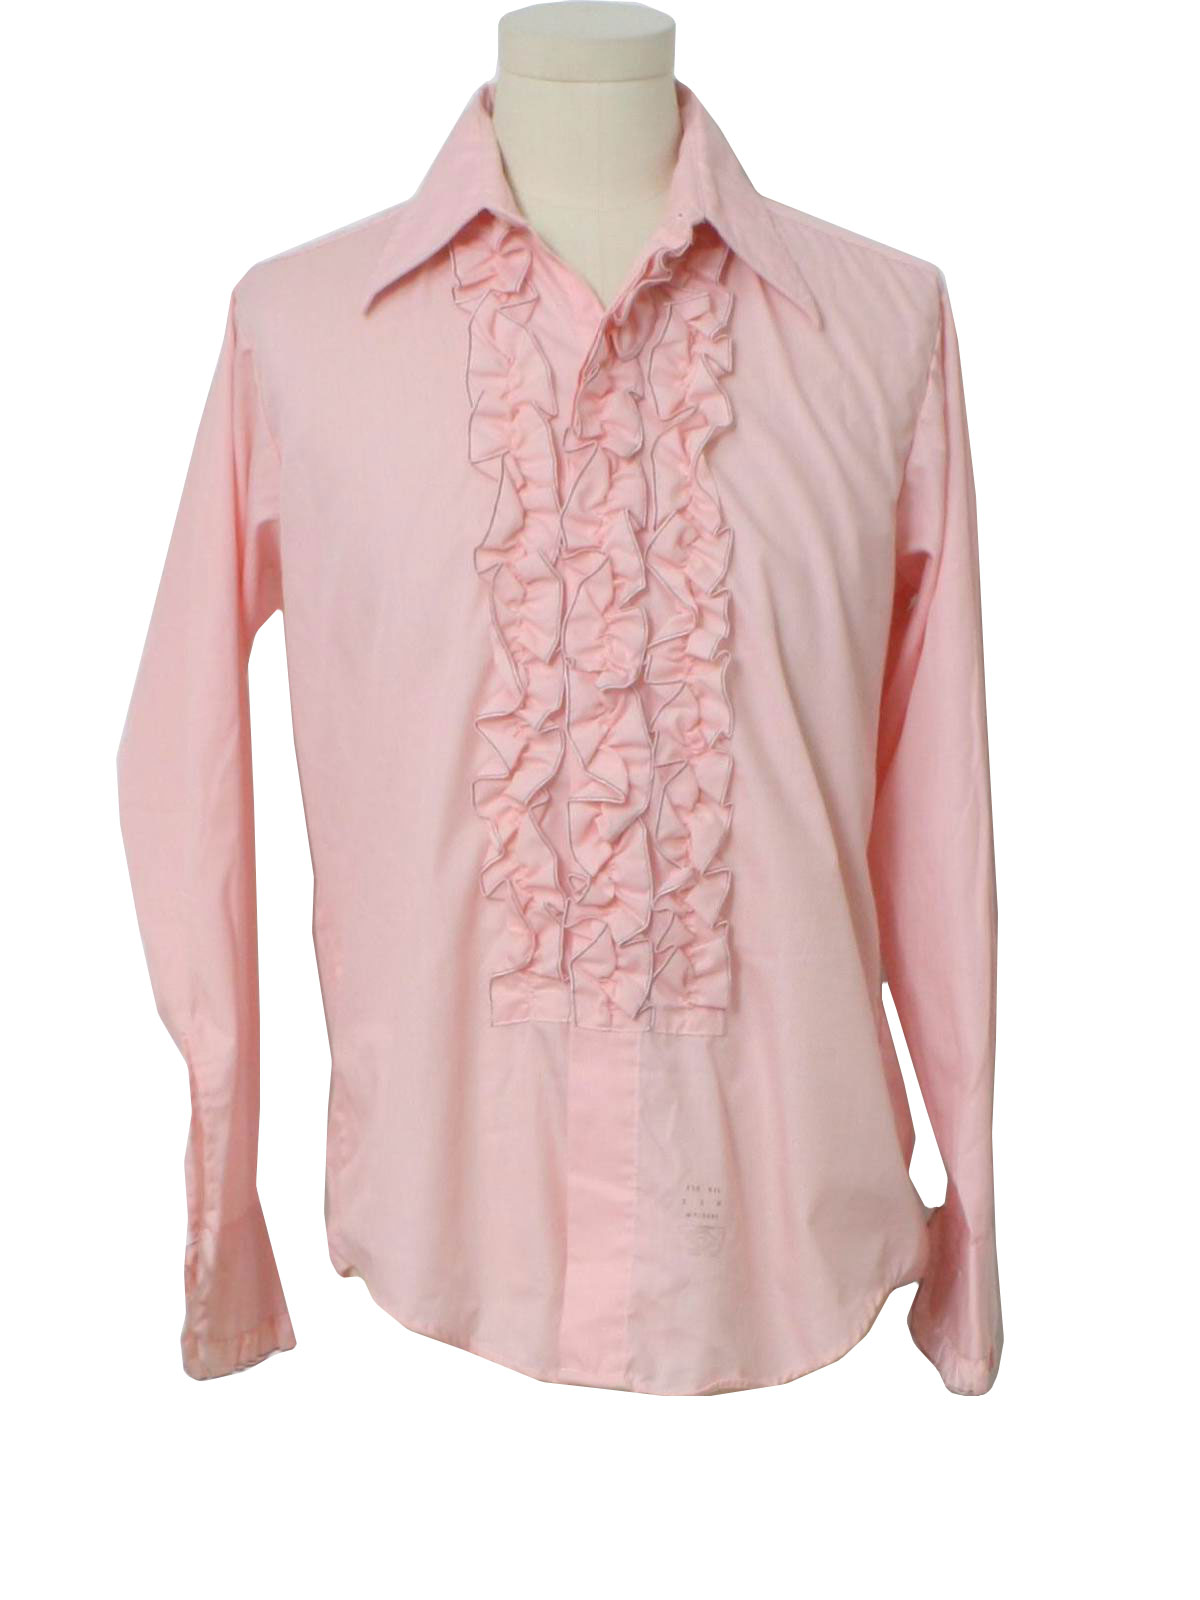 Retro 70s Shirt (Palm Beach) : 70s -Palm Beach- Mens light pink and ...